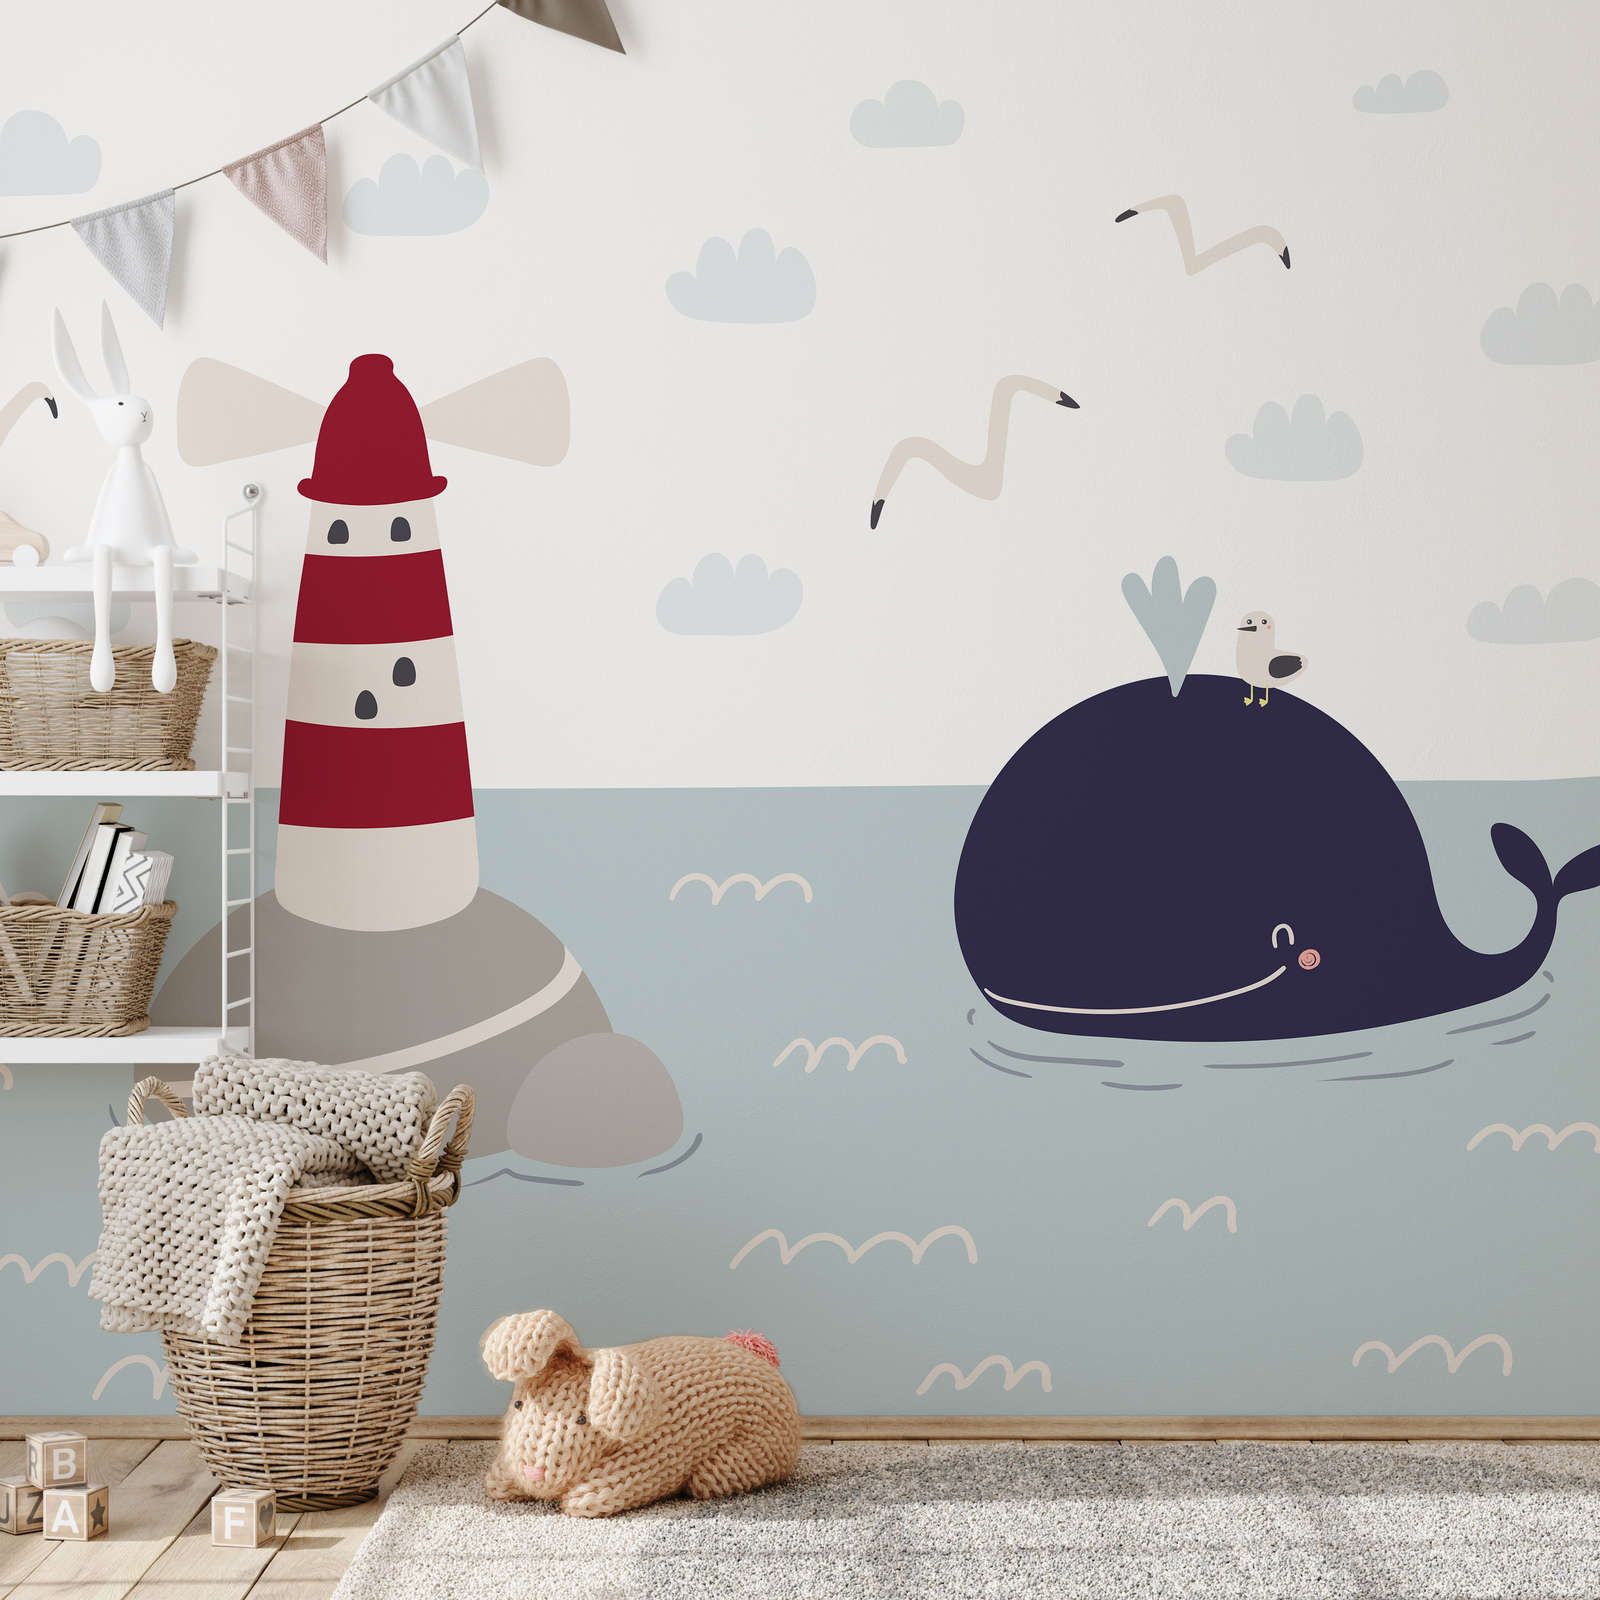             papiers peints à impression numérique pour chambre d'enfant avec phare et baleine - intissé lisse & mat
        